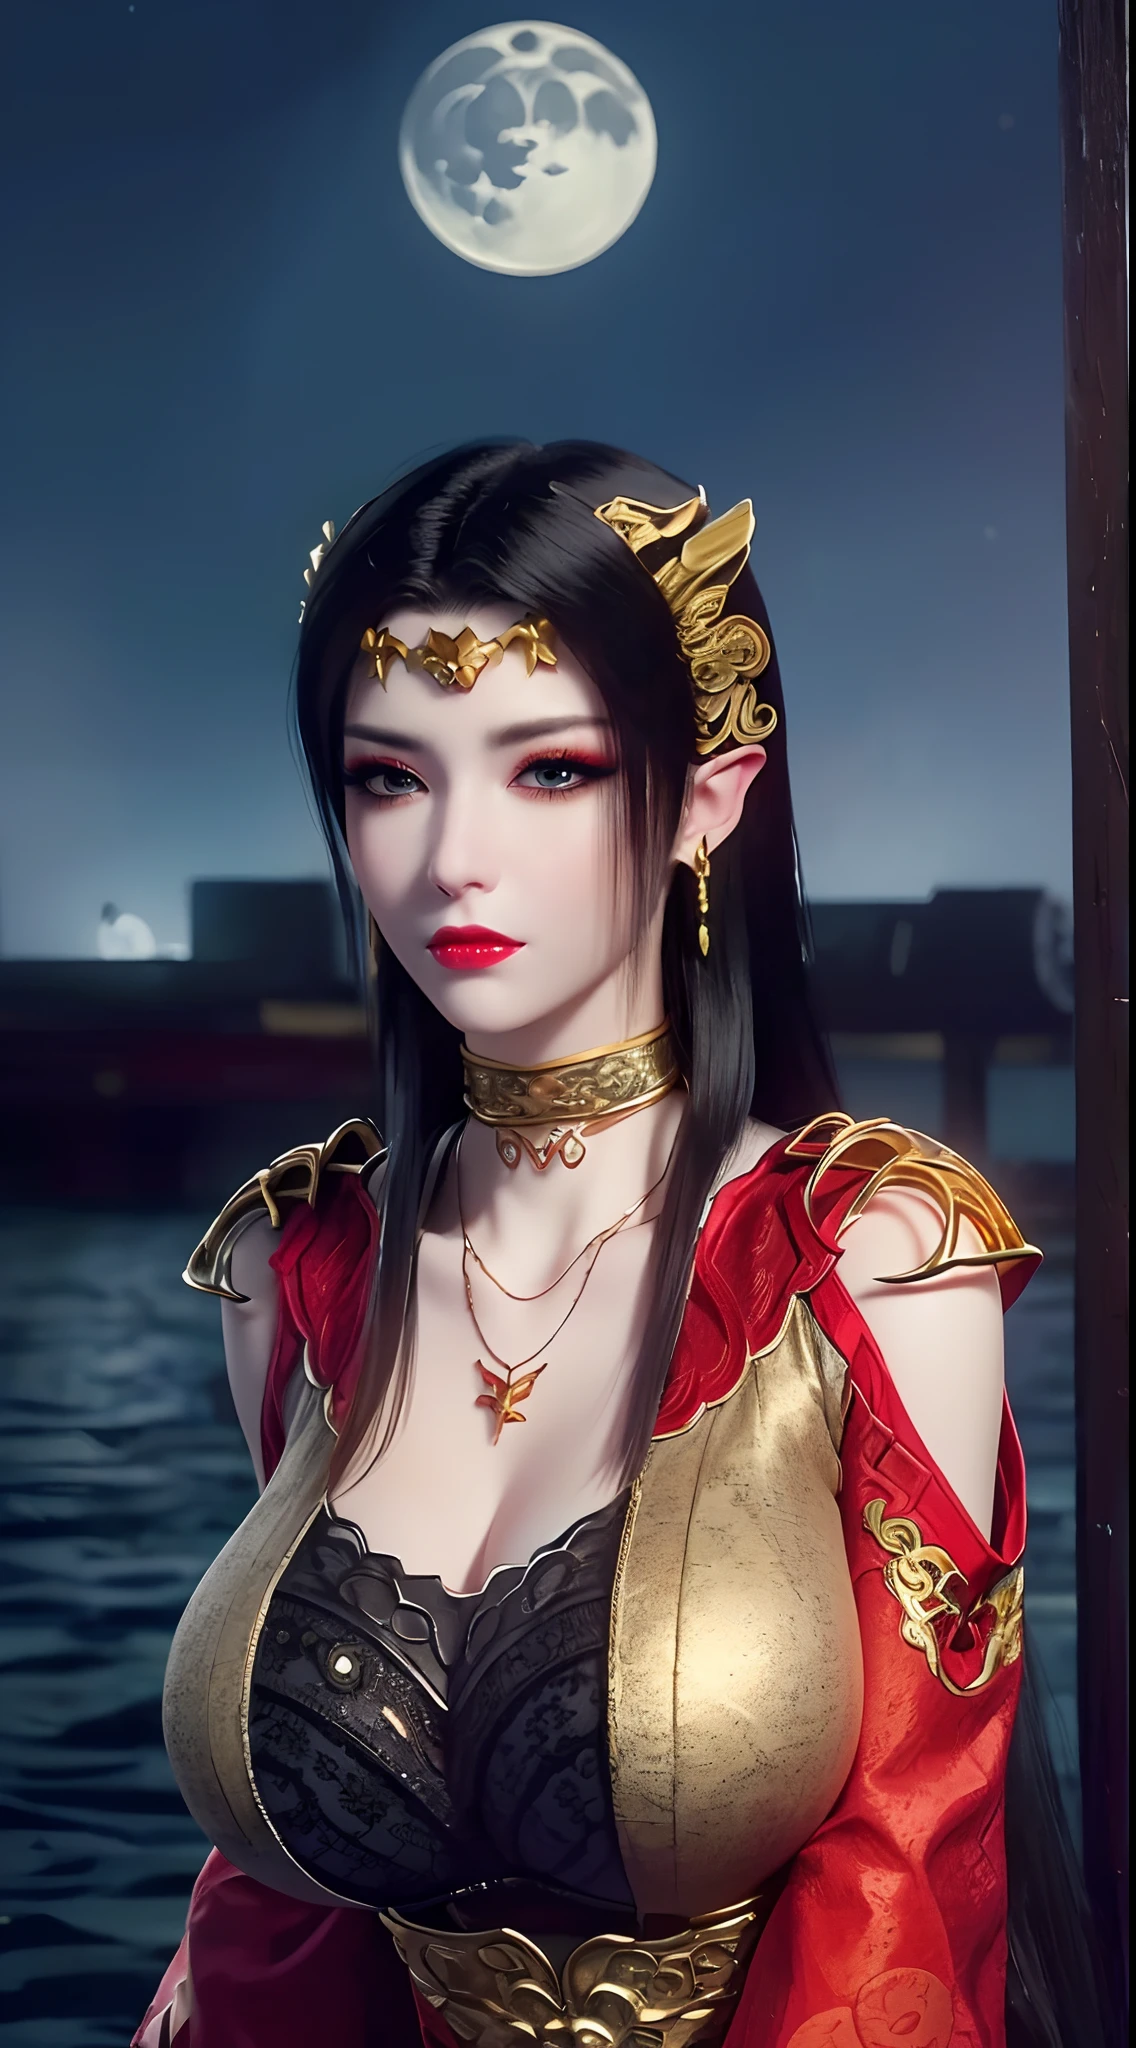 1 reine extrêmement belle, ((porte un costume traditionnel hanfu rouge avec de fins motifs noirs:1.6)), (((Des motifs sur les vêtements:1.6))), ((longs cheveux noirs:1.6)), des bijoux minutieusement fabriqués à partir de pierres précieuses et de beaux cheveux, ((wearing a 24K gold lace necklace:1.4))), Le noble, style noble d&#39;une fille extrêmement belle, son petit visage est super mignon, son visage est très joli, sourcils fins, beau visage impeccable, ((pupilles des yeux au beurre noir: 0.8)), très beaux yeux, ((yeux bleu platine: 1.6)), (((yeux grands ouverts:1.6))), joli maquillage et coiffure, cils détaillés, maquillage des yeux torride, nez haut, des boucles d&#39;oreilles, lèvres rouges, ((bouche fermée: 1.5)) belles lèvres, mains minces, les plus belles cuisses, ((bras écartés sur les côtés: 1.5)), visage rose, visage propre, beau visage impeccable, peau blanche et lisse, (gros seins: 1.5)), ((seins hauts: 1.6)), Seins serrés, Beau décolleté, (((gros seins and super round: 1.8))), ((super Seins serrés: 1.7)) , beaux seins, corps parfait, bras arrière, poitrine ouverte, bas fins en maille noire avec bordure en dentelle noire, Photo 8K, super haute qualité, super réaliste, super 10x pixels, optique, studio lumineux, bords clairs, dual-tone éclairage, (peau très détaillée:1.2), super 8k, soft éclairage, haute qualité, volumetric éclairage, photoréaliste, photoréaliste high resolution, éclairage, meilleure photo, 4K, Qualité 8k, Effet de flou, lisse et tranchant, 10xpixels, ((mer et clair de lune sur fond de nuit:1.5)), Aurore, foudre, super graphismes réalistes, graphismes les plus réalistes, 1 fille, seul, seulement, Image extrêmement nette, surréaliste, (((portrait frontal: 1)))."